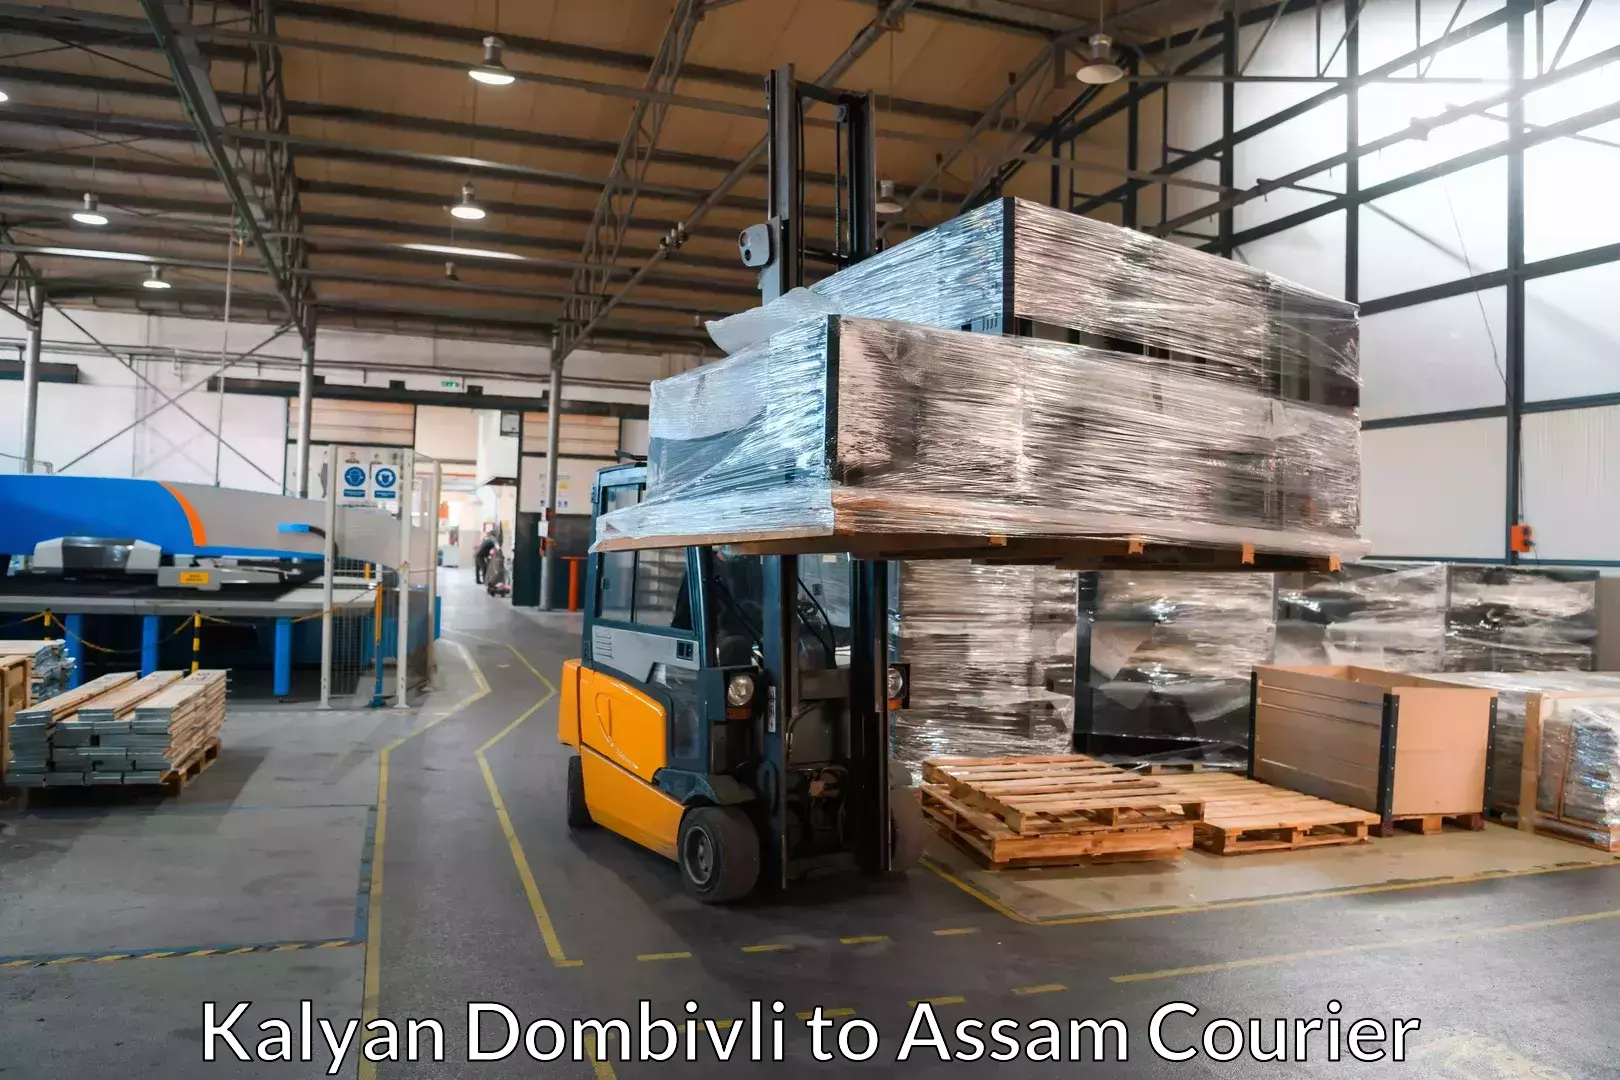 Furniture moving plans Kalyan Dombivli to IIT Guwahati